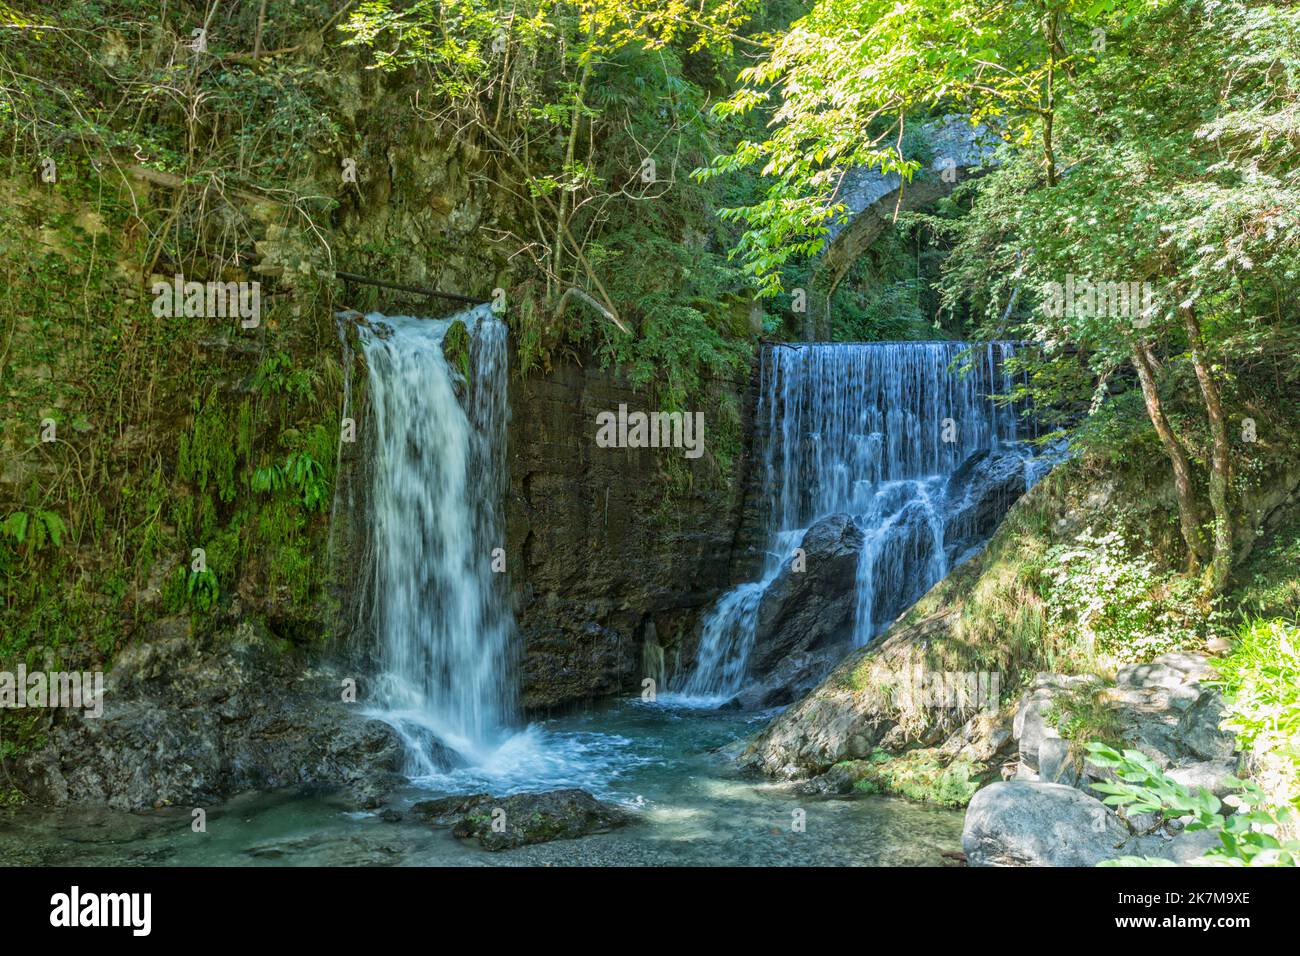 Cascata di Tobi waterfalls at Grandola ed Uniti above Menaggio on Lake Como, Italy Stock Photo